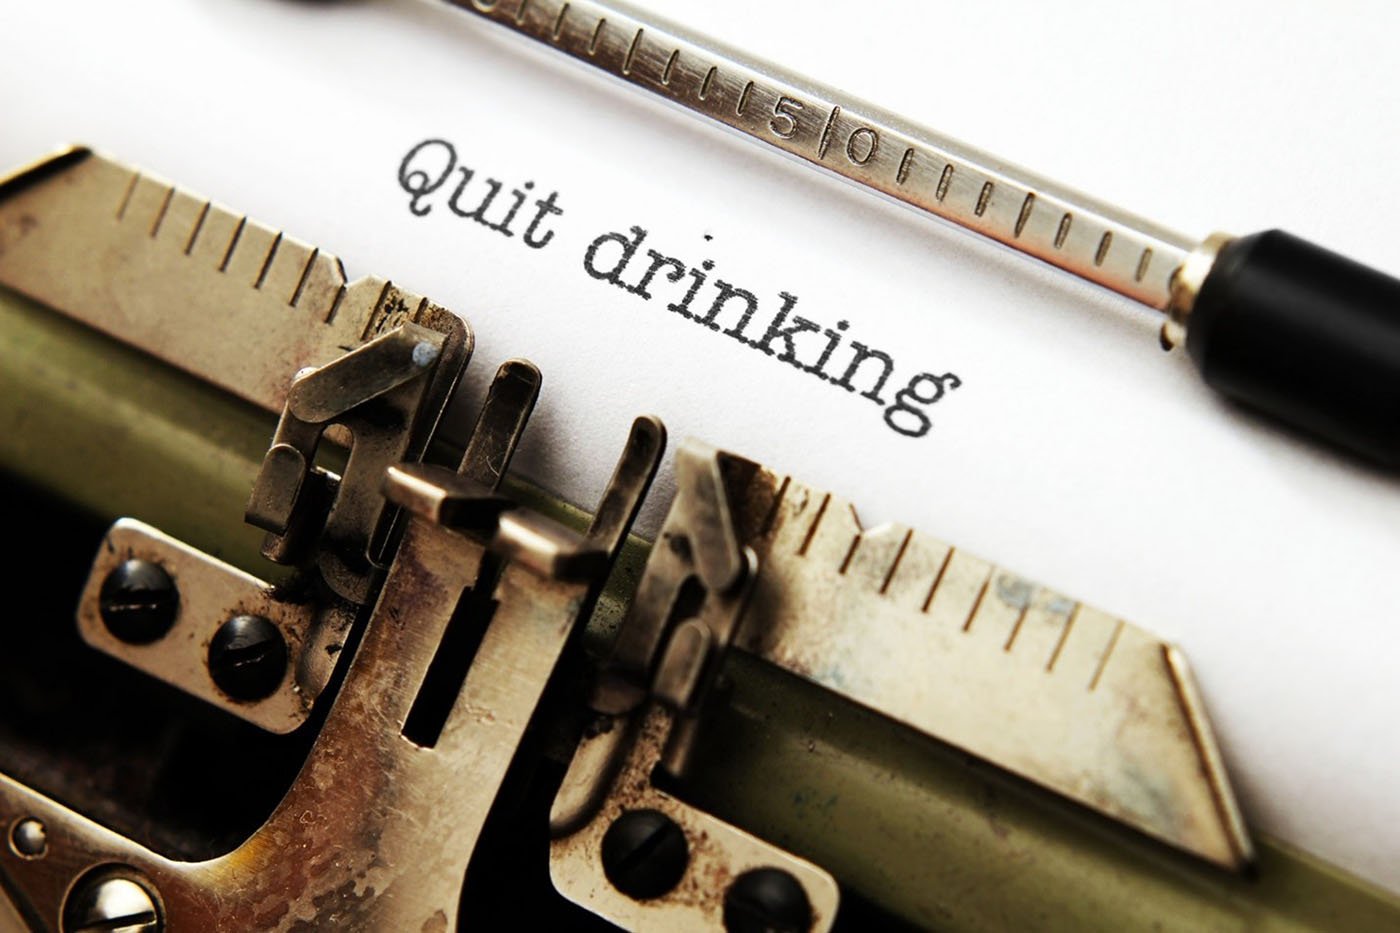 "Quit Drinking" on typewriter